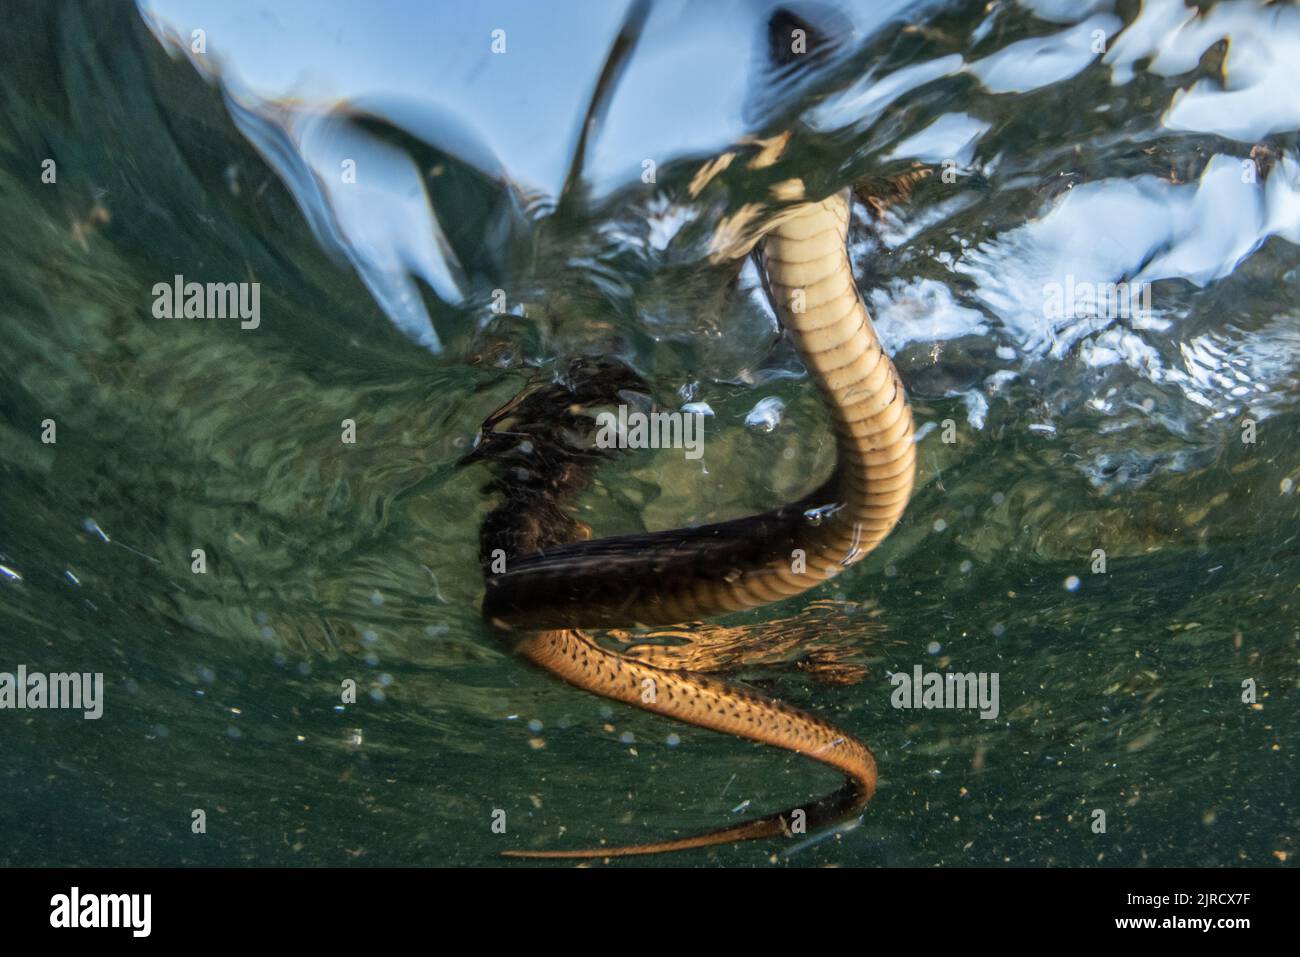 Una serpiente de la sierra (Thamnophis couchii), una serpiente en el agua prístina de un río de montaña en las montañas de Sierra Nevada de California. Foto de stock